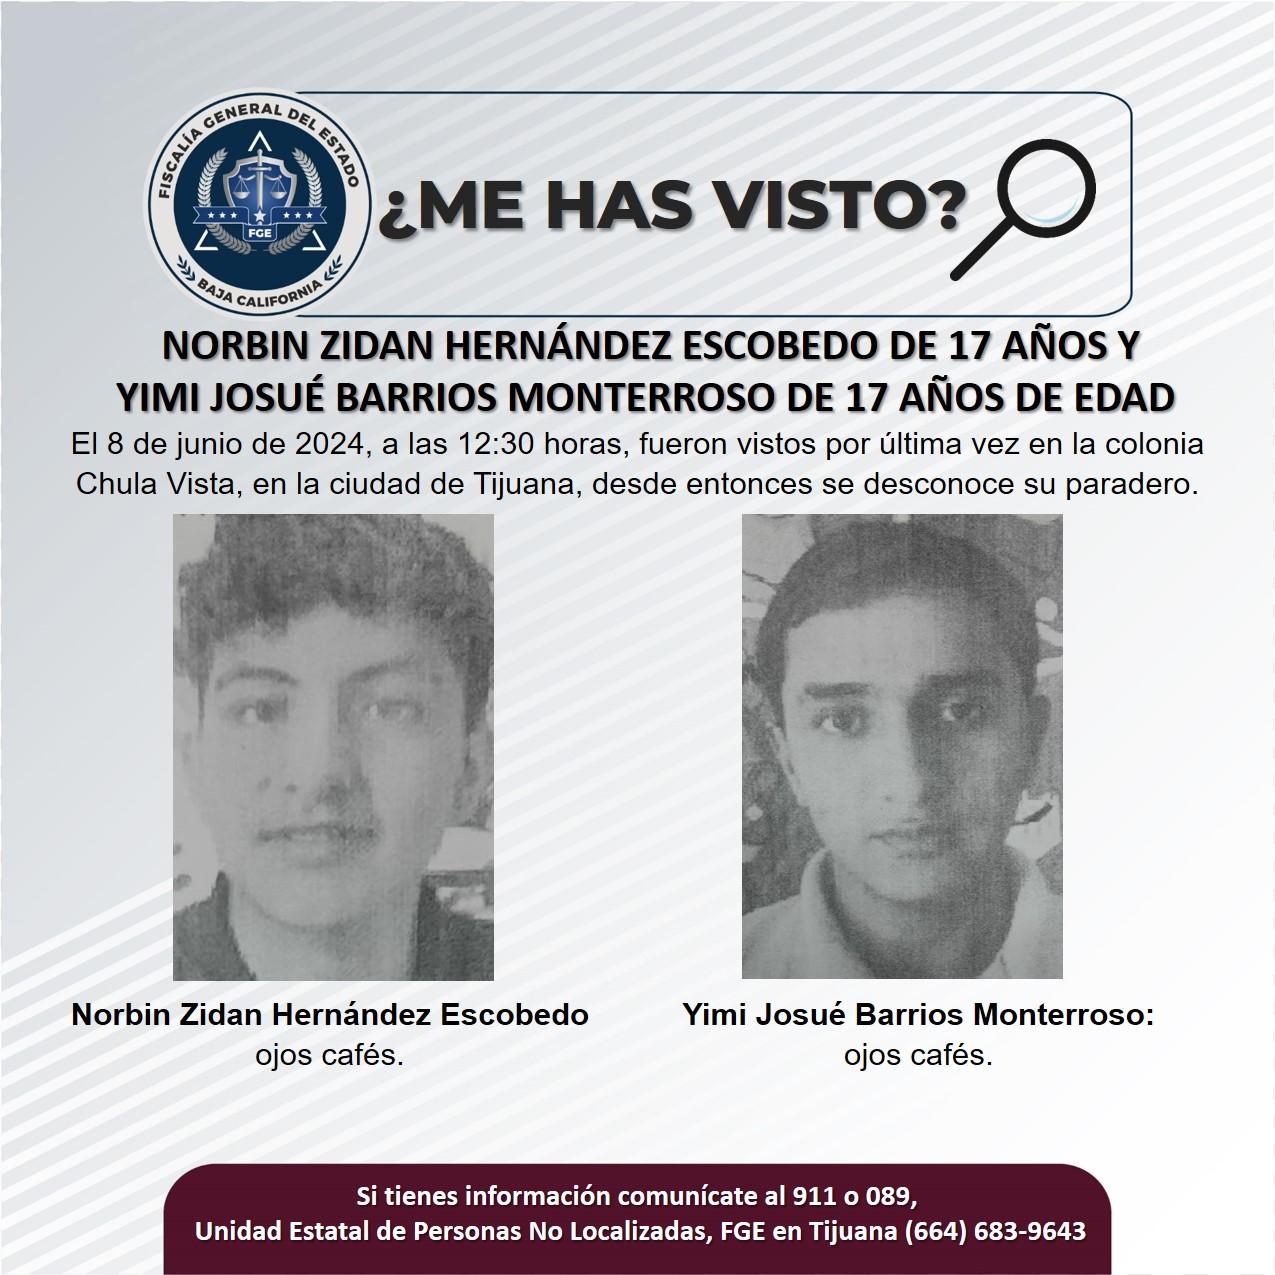 Servicio social: Se buscan a Norbin Zidan Hernández Escobedo de 17 años y Yimi Josué Barrios Monterroso de 17 años de edad